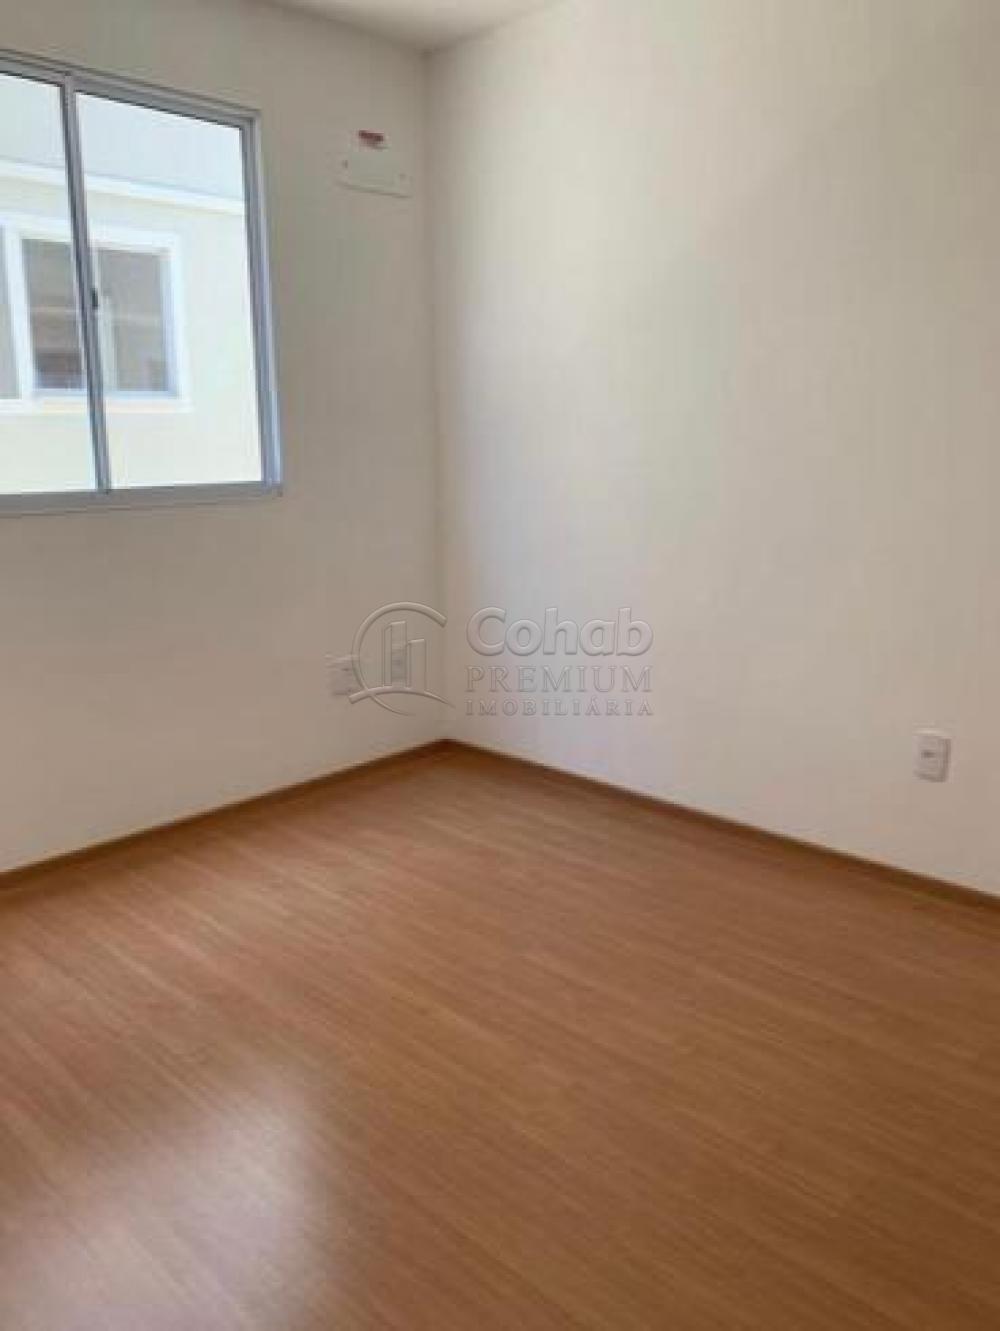 Comprar Apartamento / Padrão em Barra dos Coqueiros R$ 130.000,00 - Foto 6